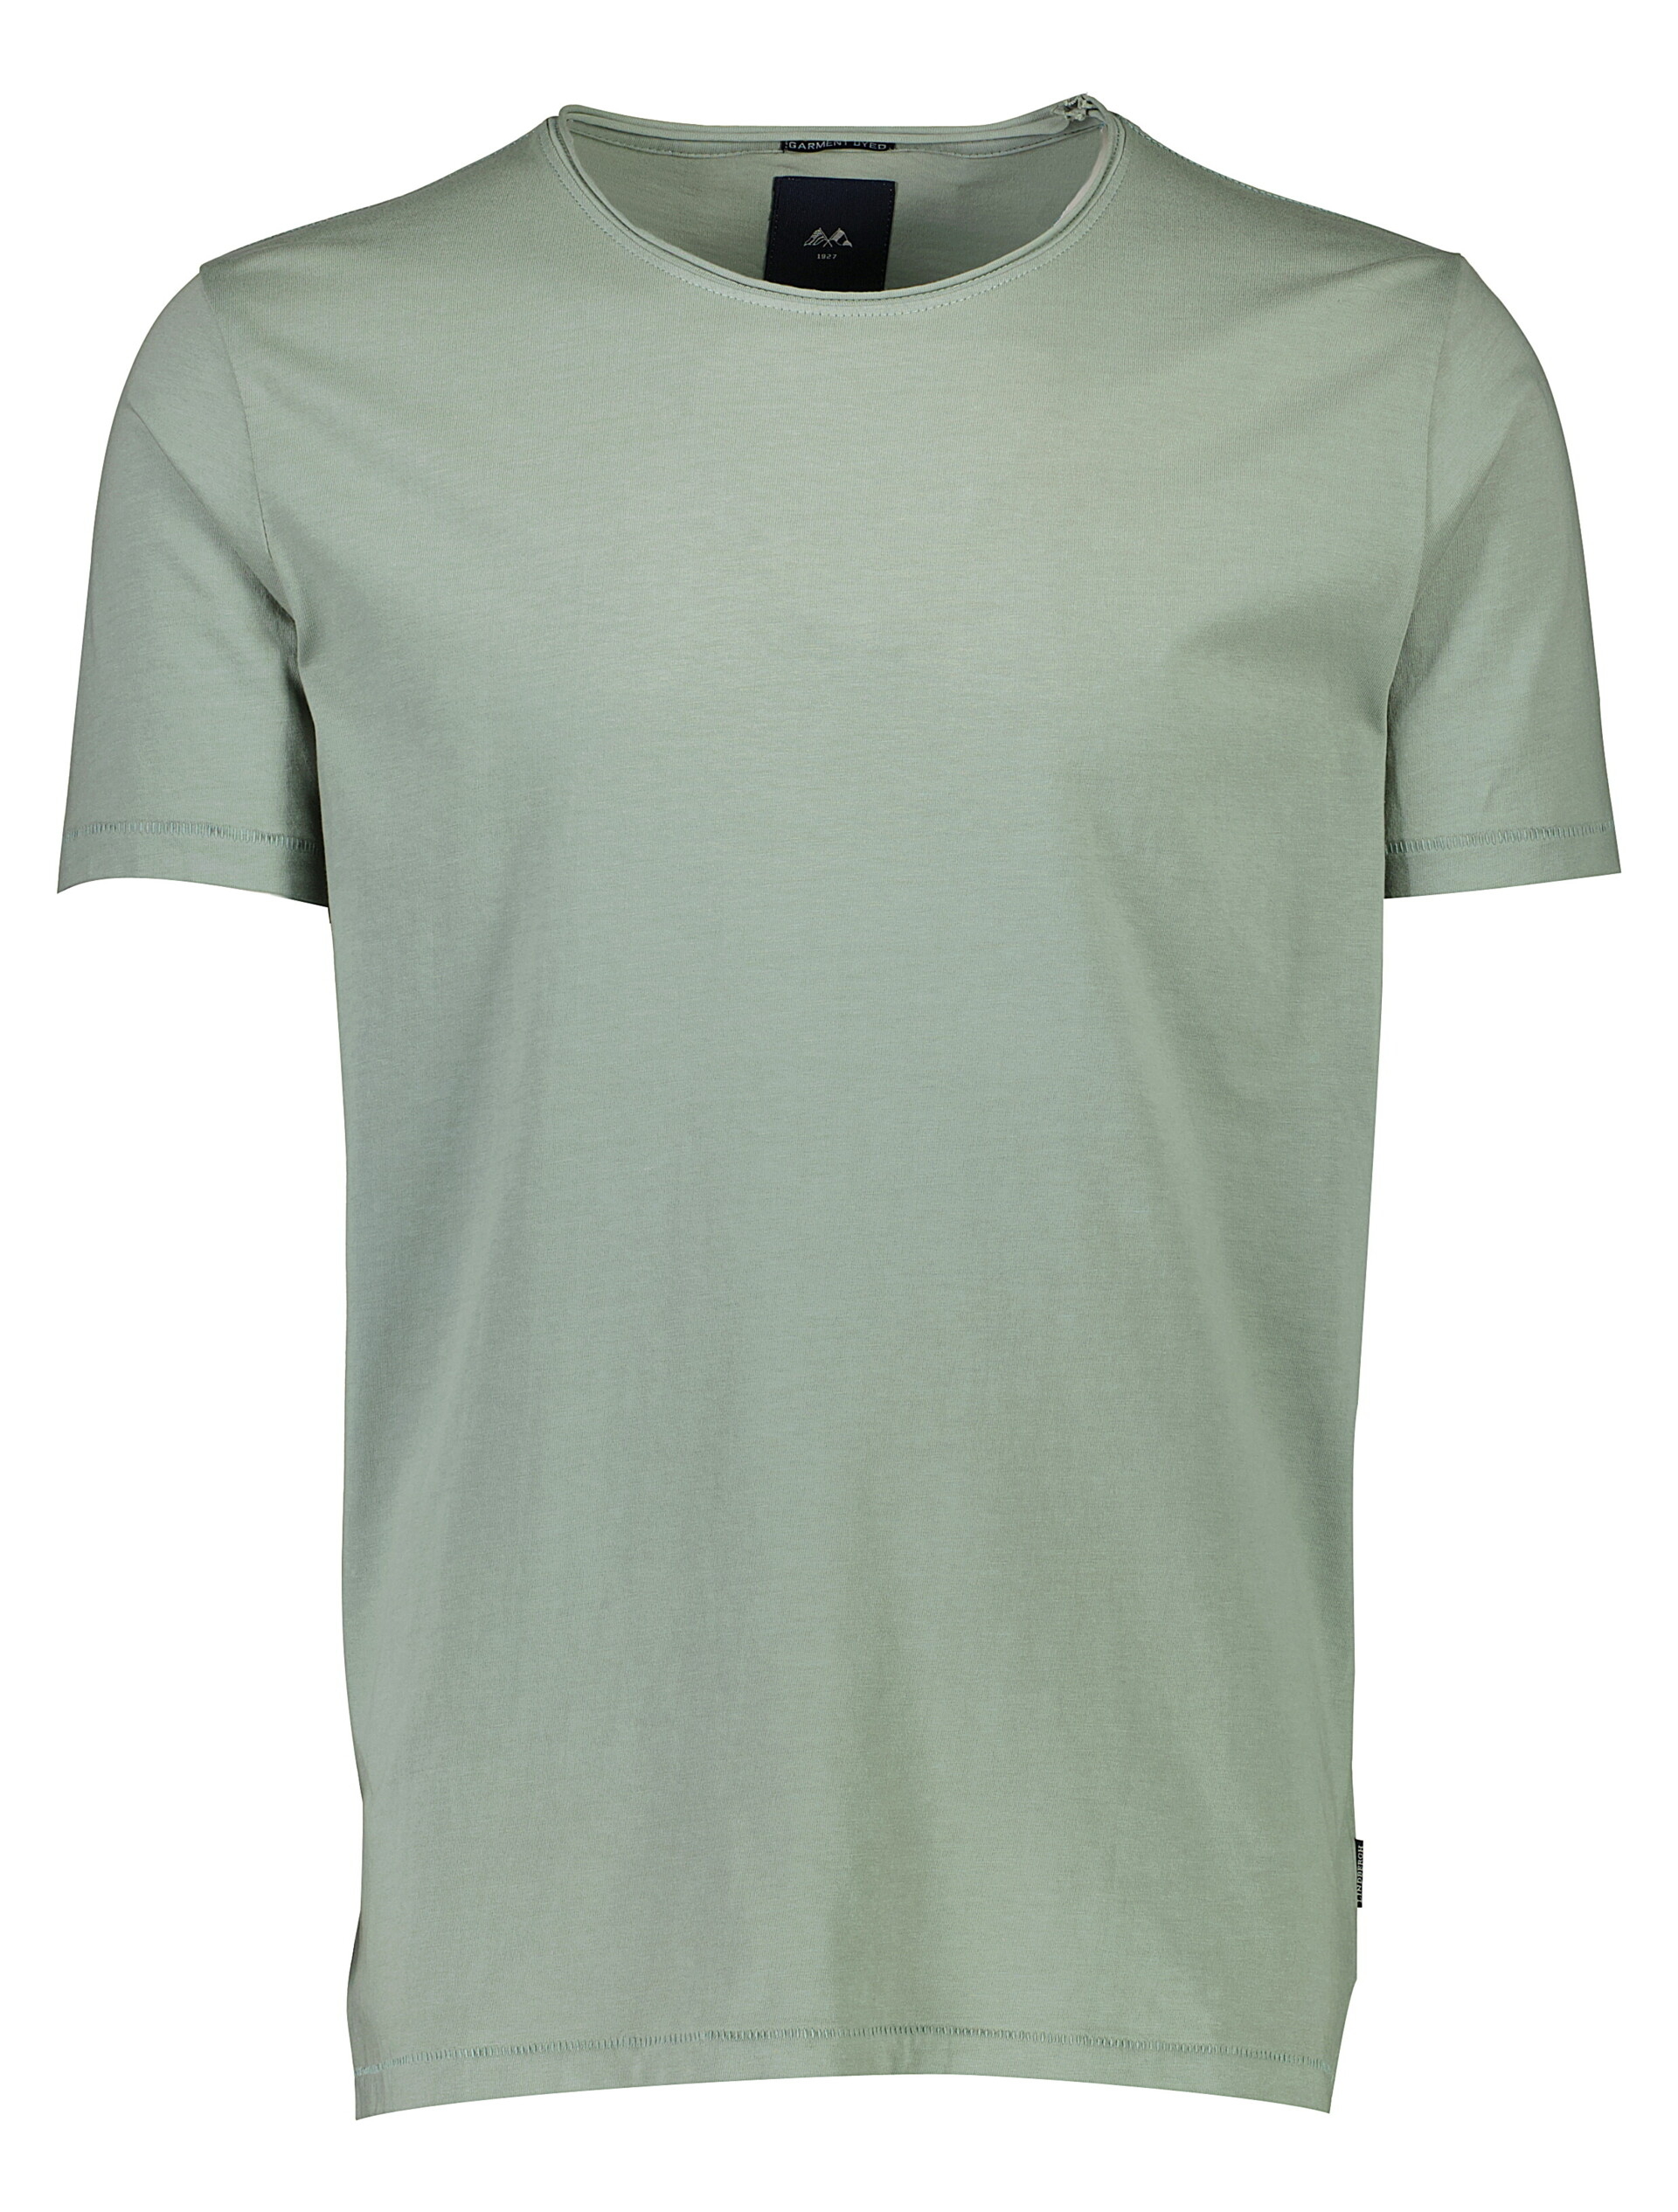 Lindbergh T-shirt groen / mint